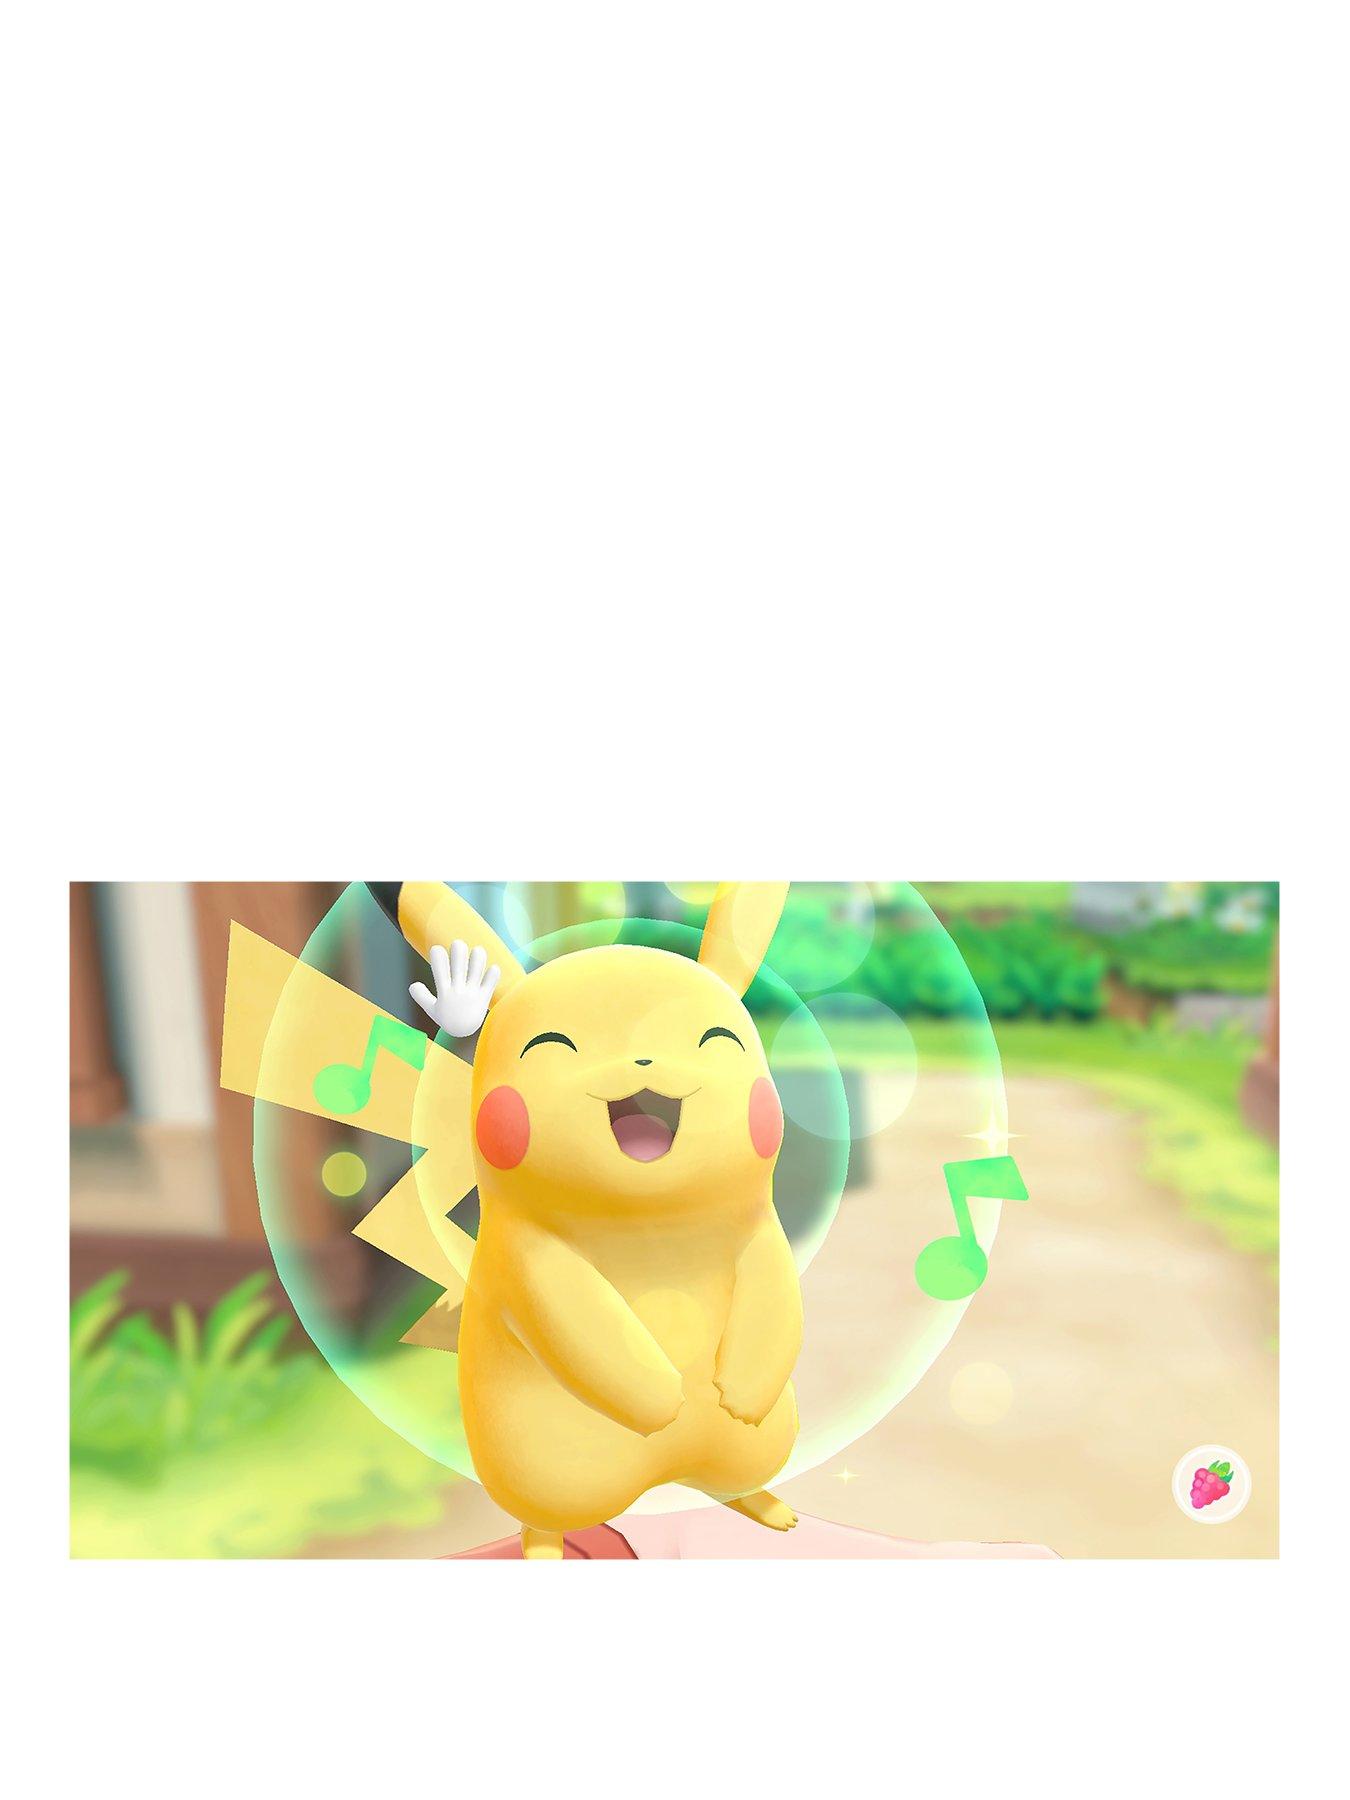 pokemon let's go pikachu uk